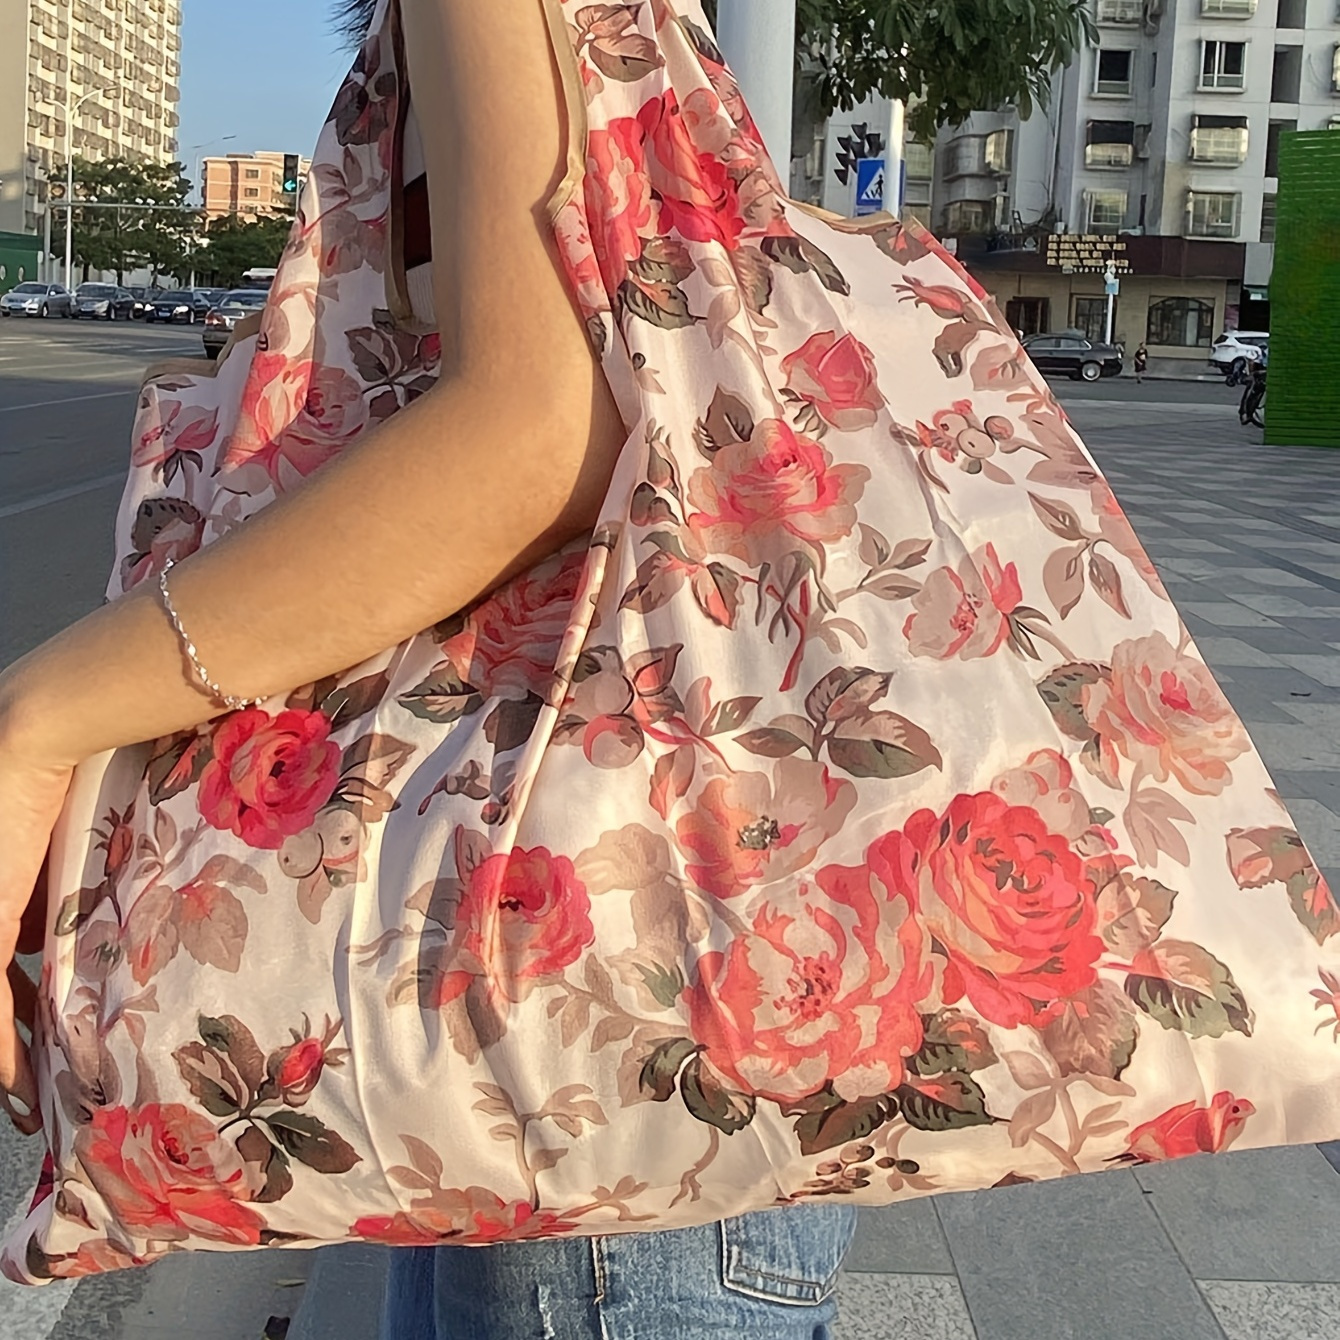 

All Over Print Shoulder Bag, Light Weight Foldable Shopper Bag, Reusable Bag For Outdoor